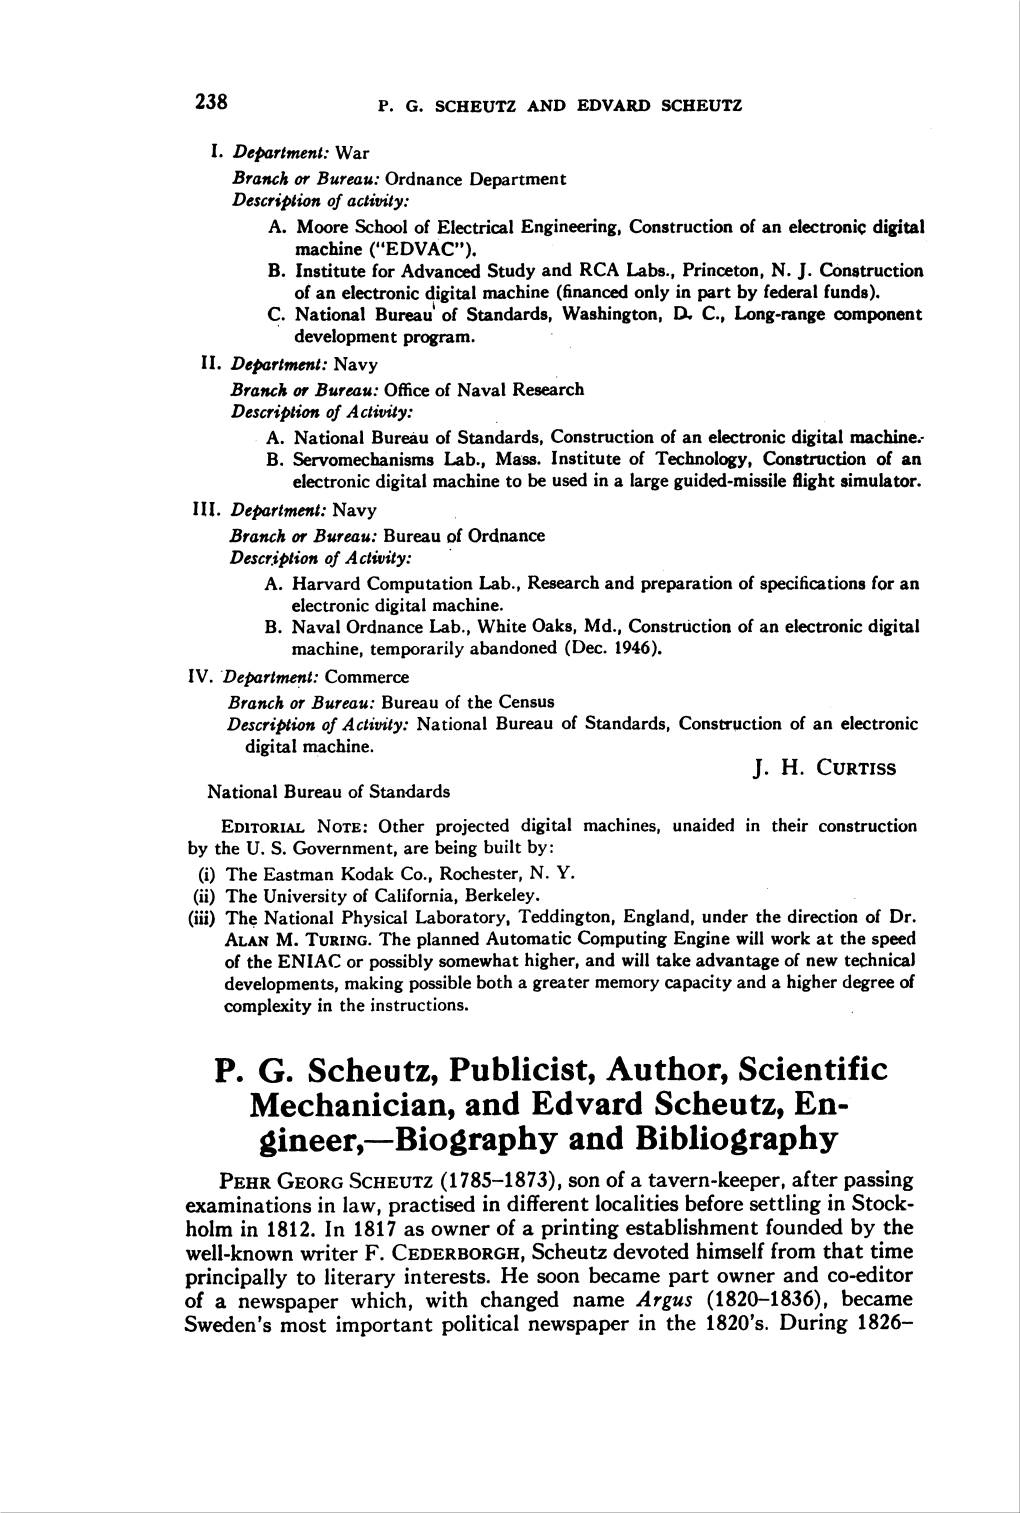 P. G. Scheutz, Publicist, Author, Scientific Gineer—Biography And